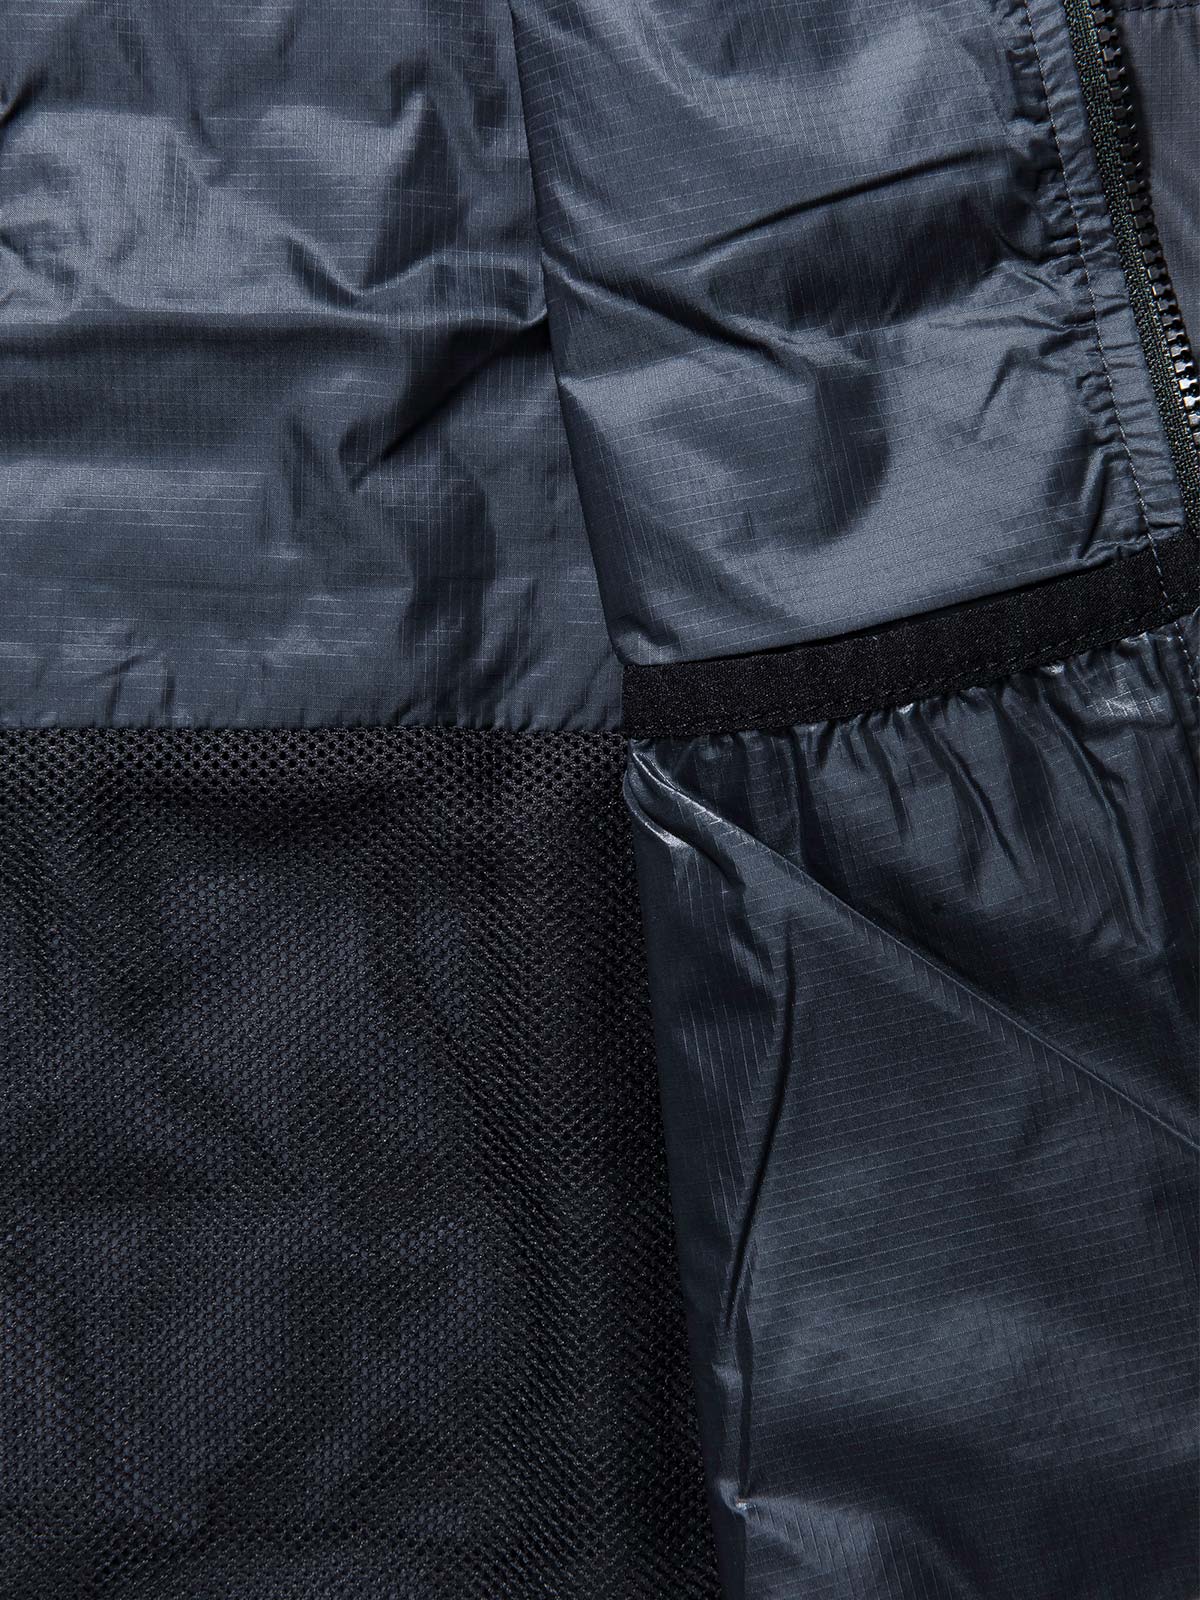 Acre Series Vest von Mission Workshop - Wetterfeste Taschen & Technische Bekleidung - San Francisco & Los Angeles - Für die Ewigkeit gebaut - Garantiert